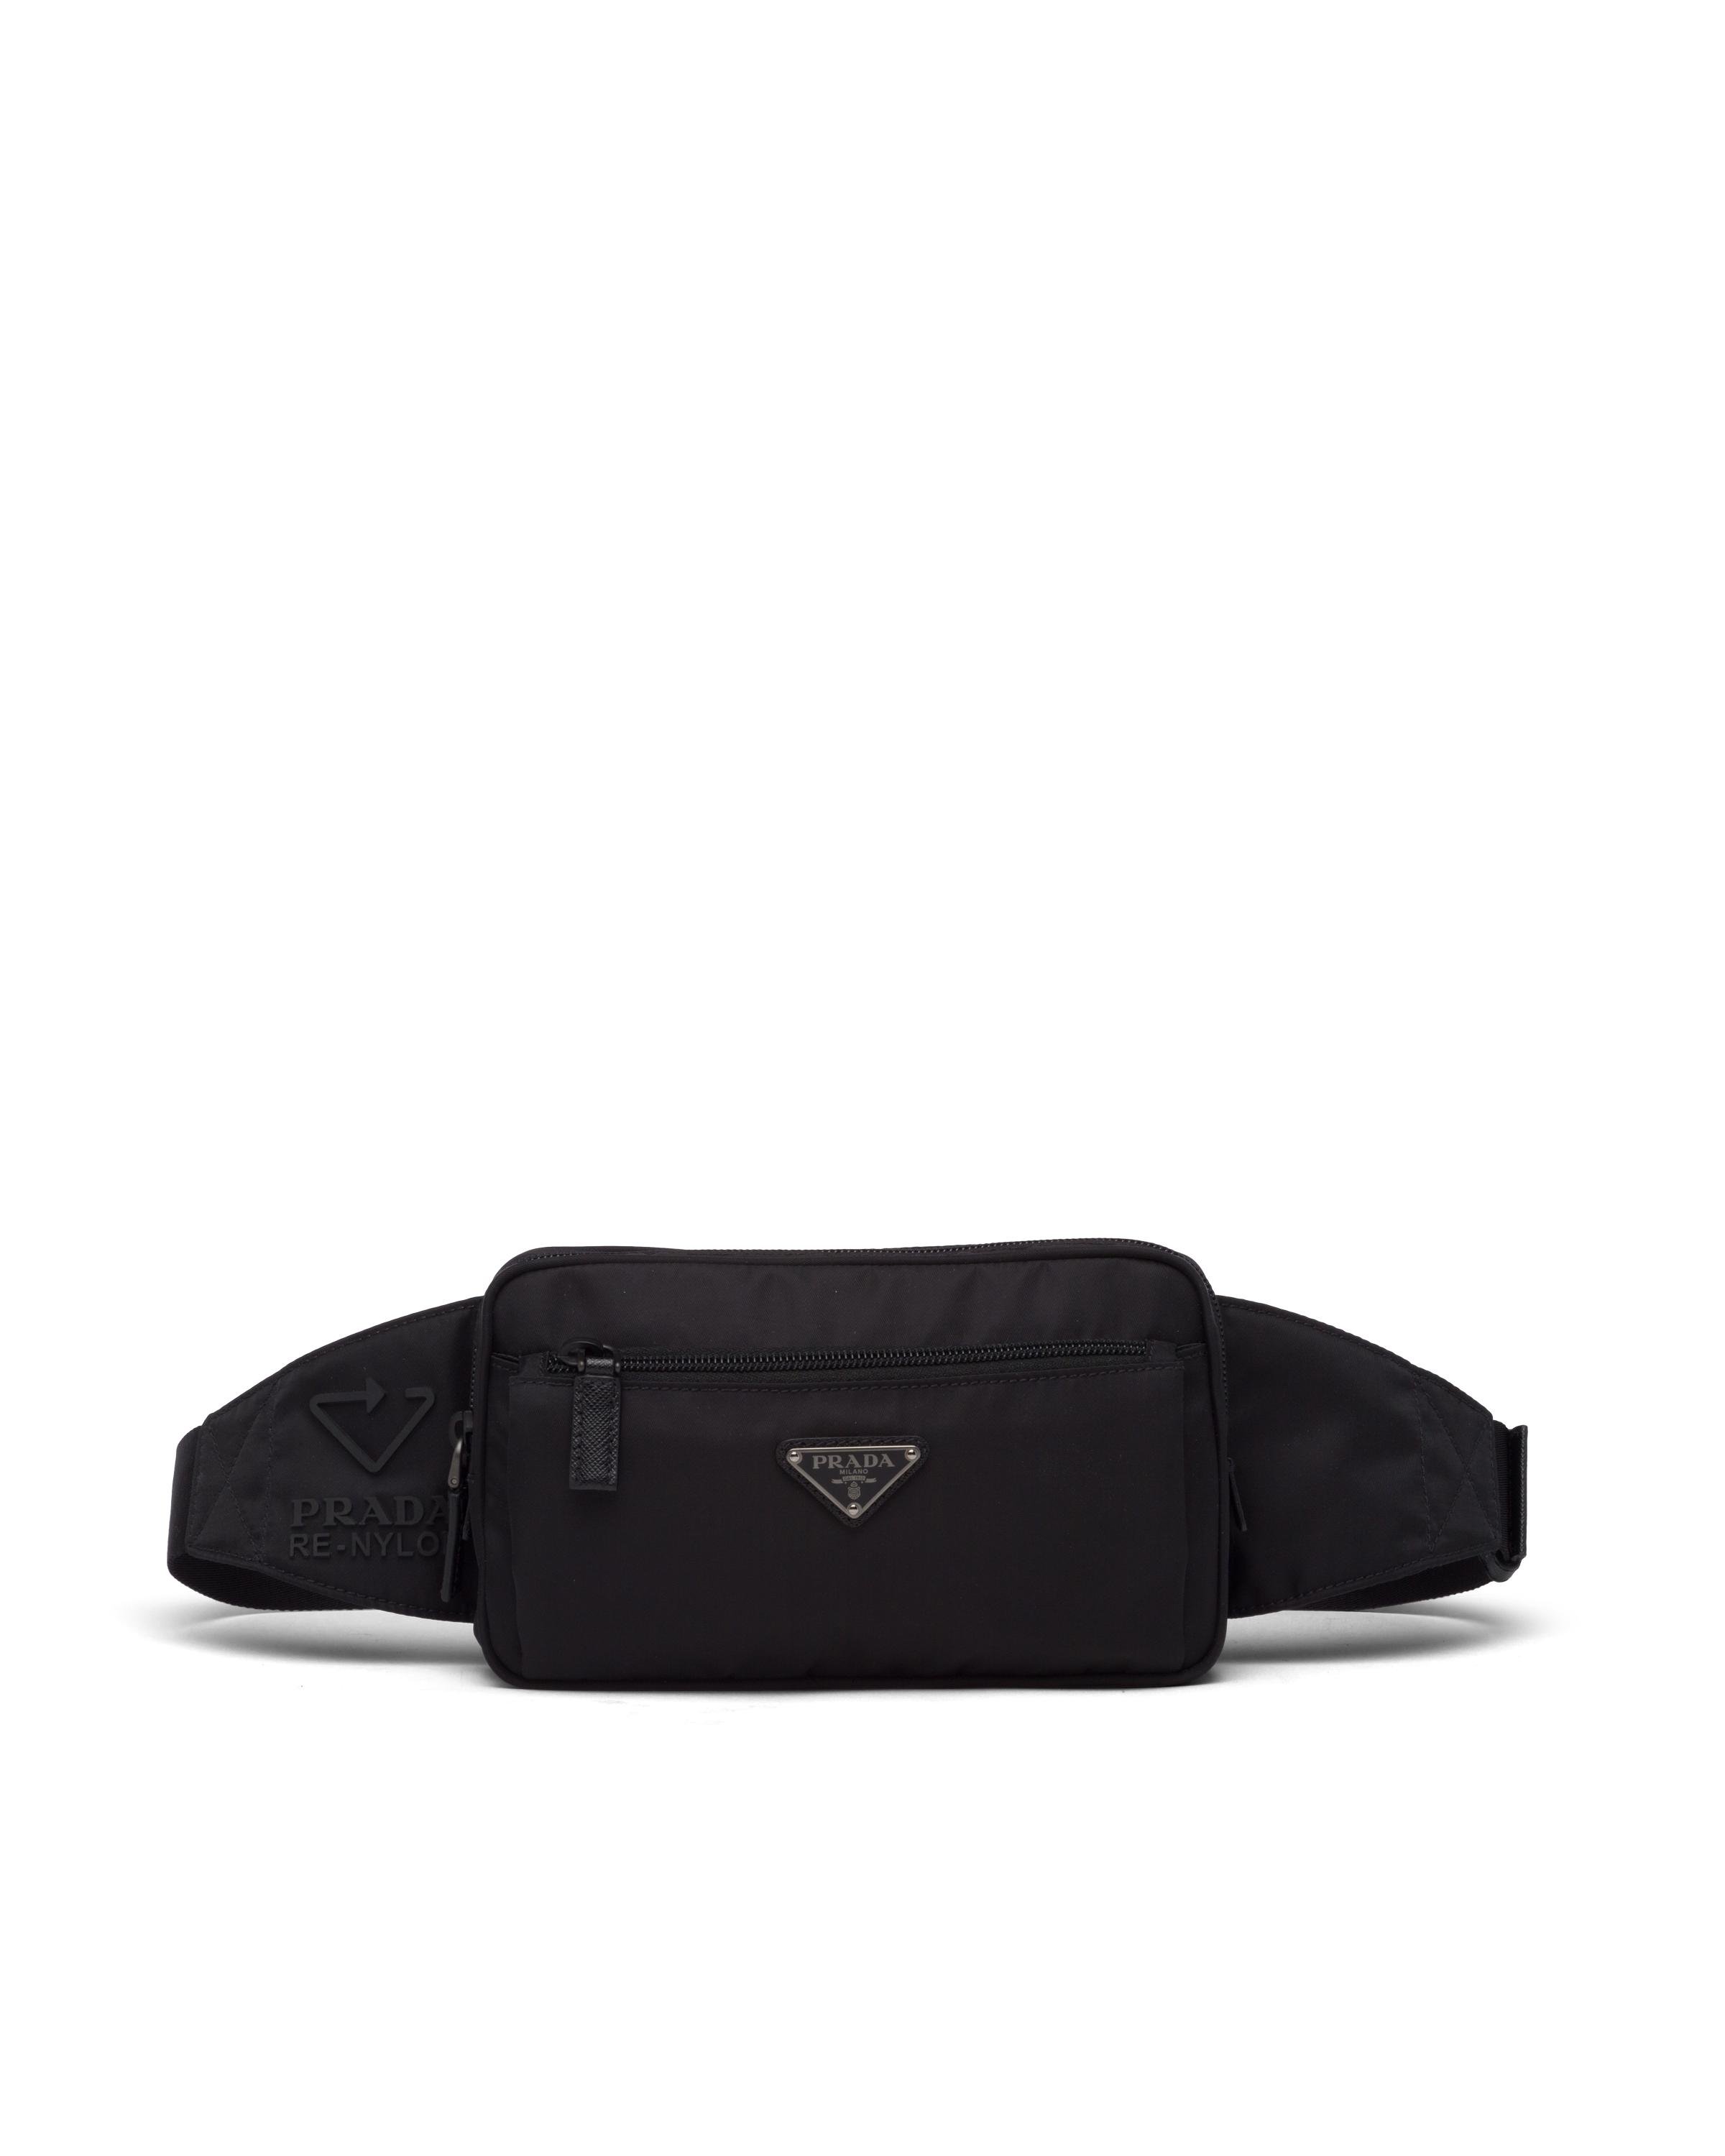 Prada Mens Black Logo Leather And Re-nylon Belt Bag for Men | Lyst